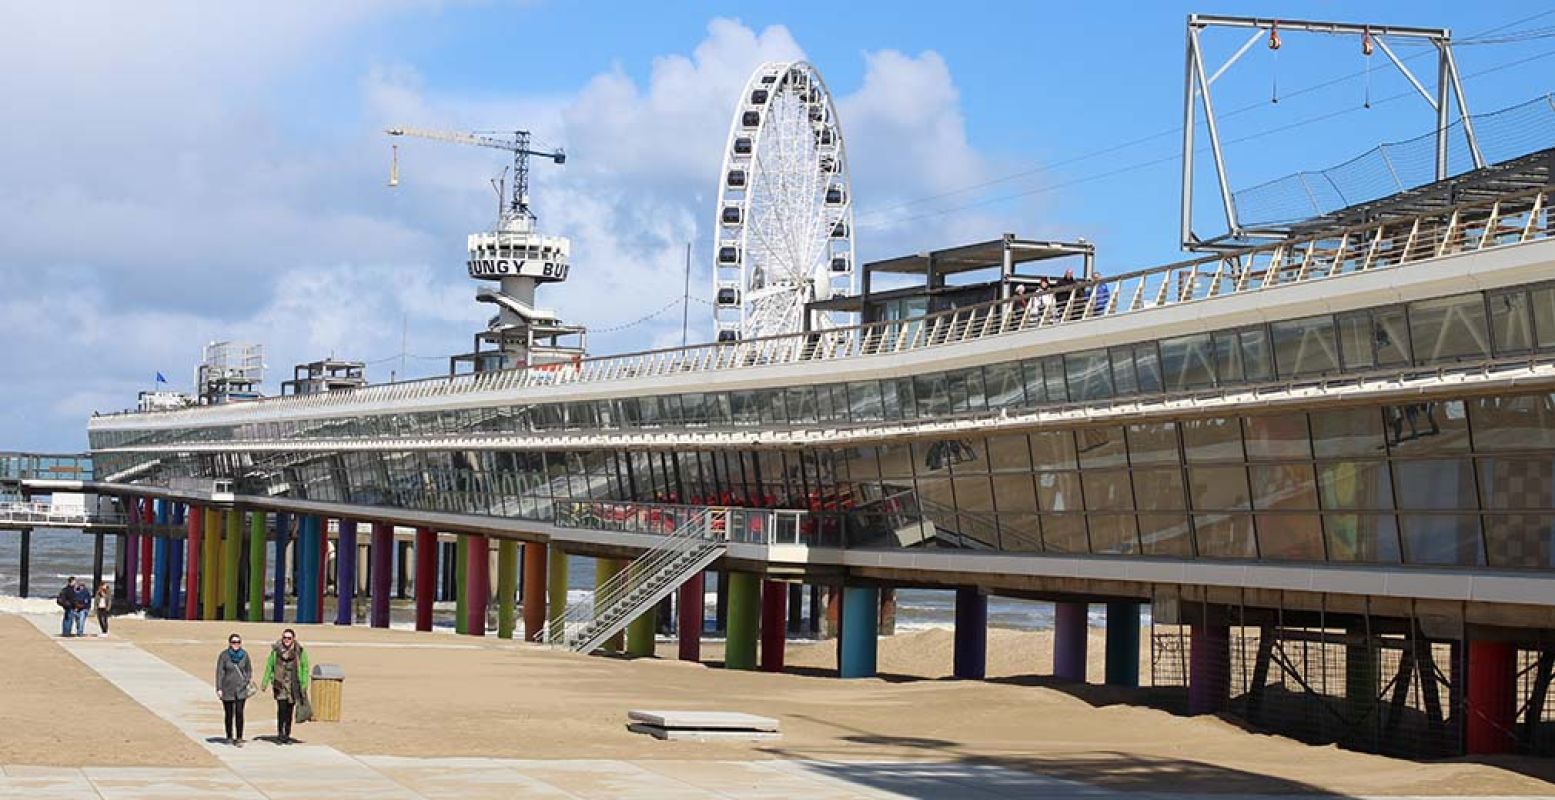 De Pier is het centrum van entertainment in Scheveningen. Foto: Redactie DagjeWeg.NL.